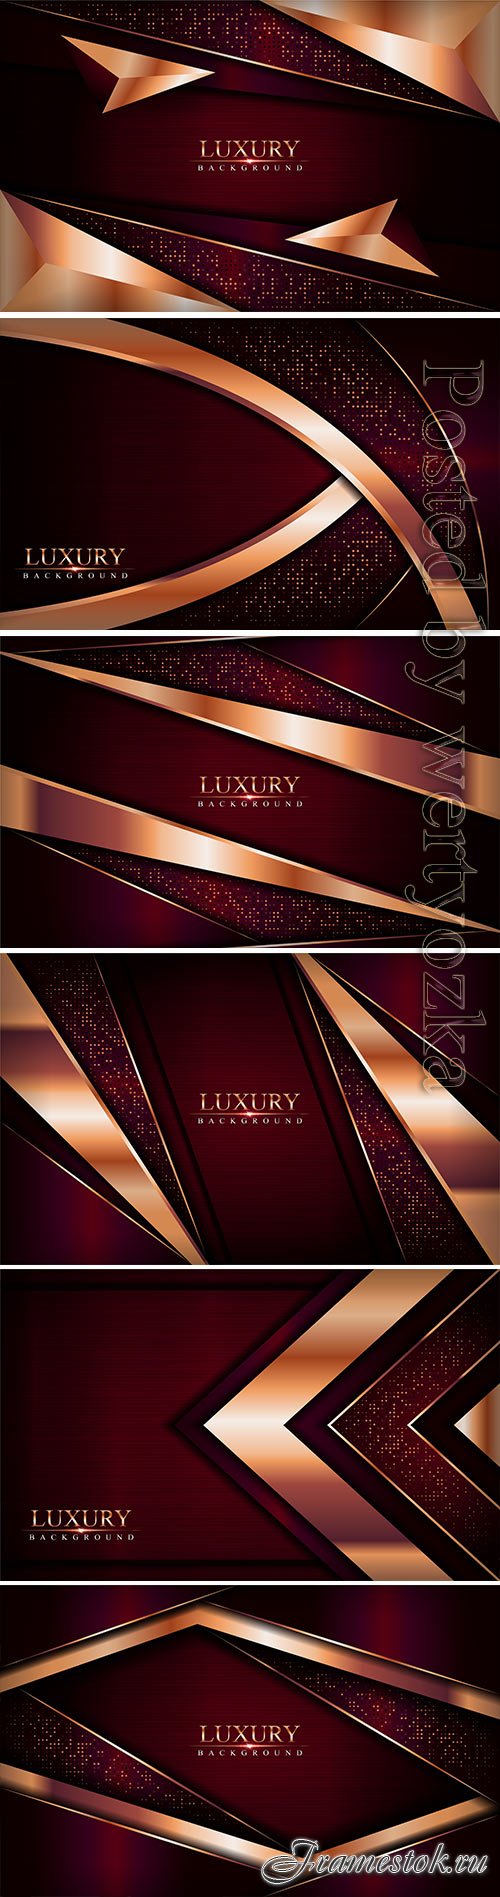 Luxury dark red vector background combine with golden bronze lines element